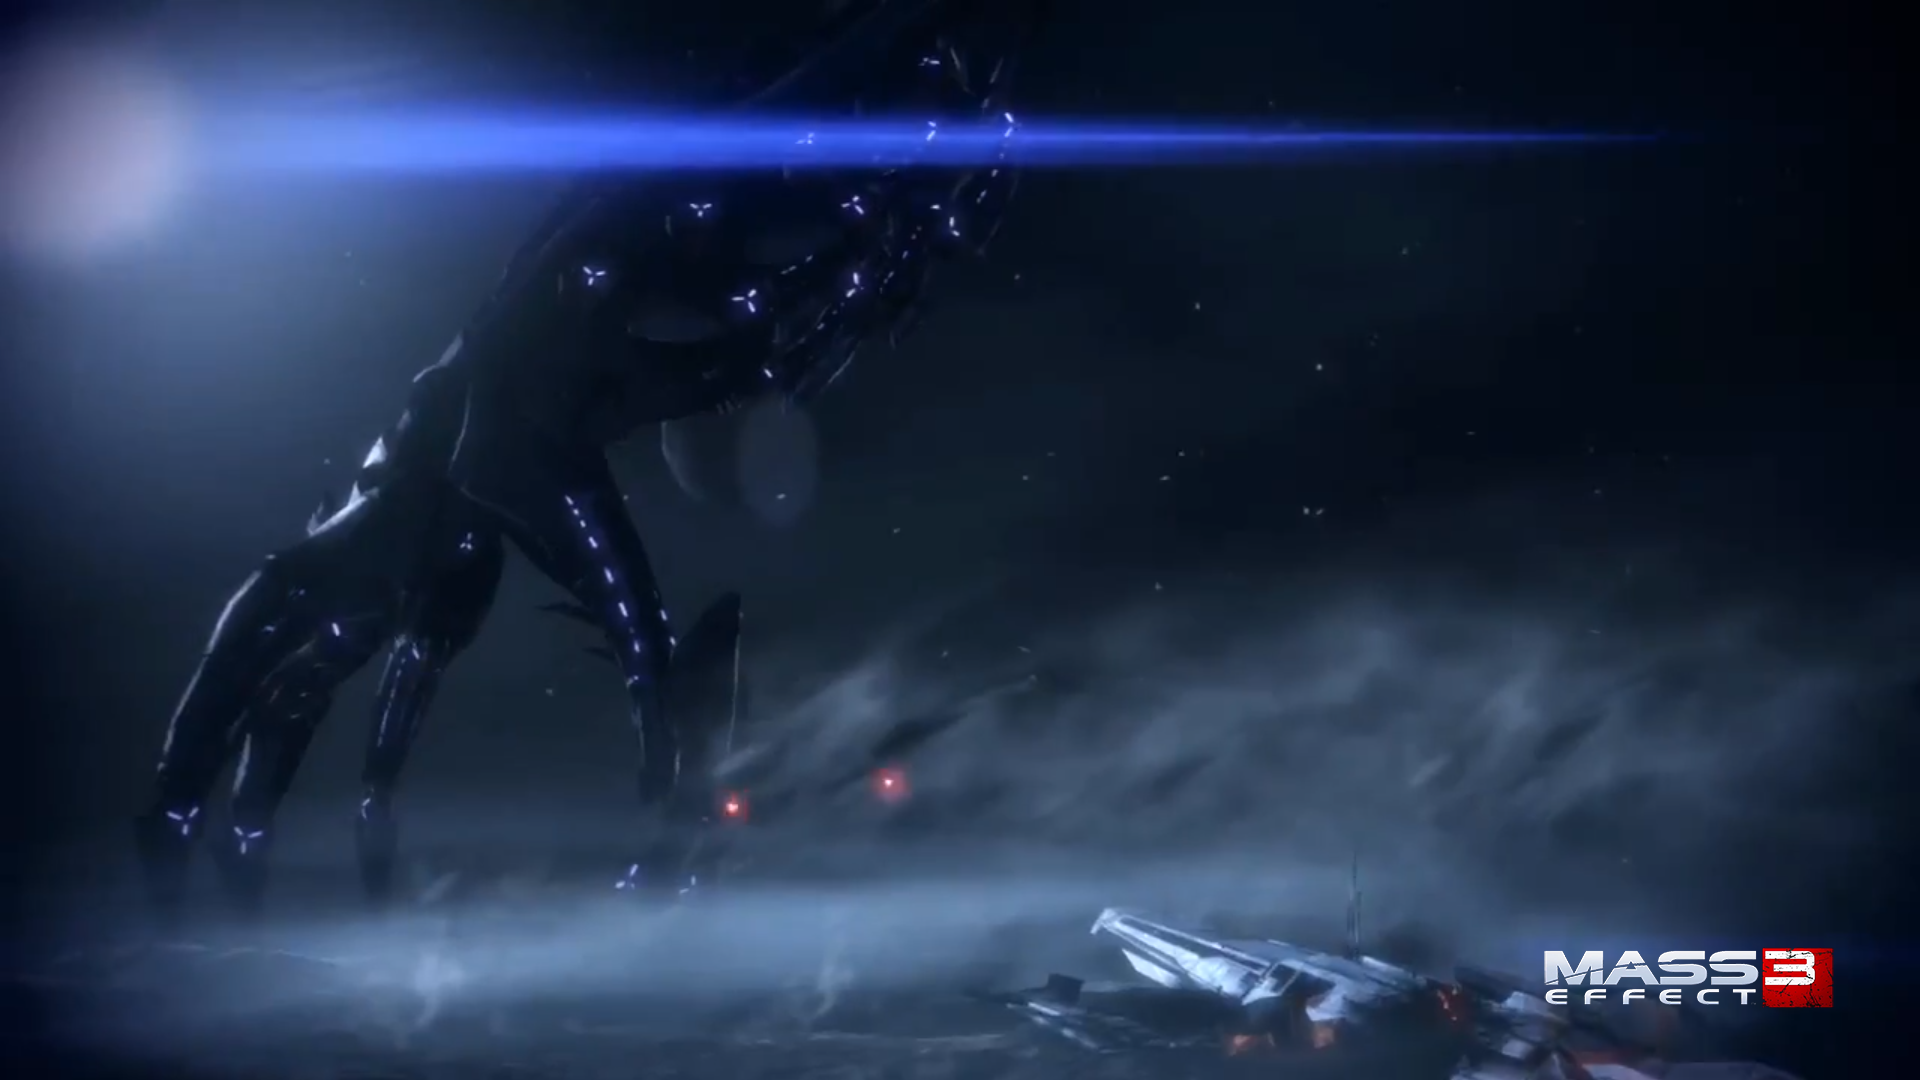 Mass Effect Reaper Wallpapers - Wallpaper Cave